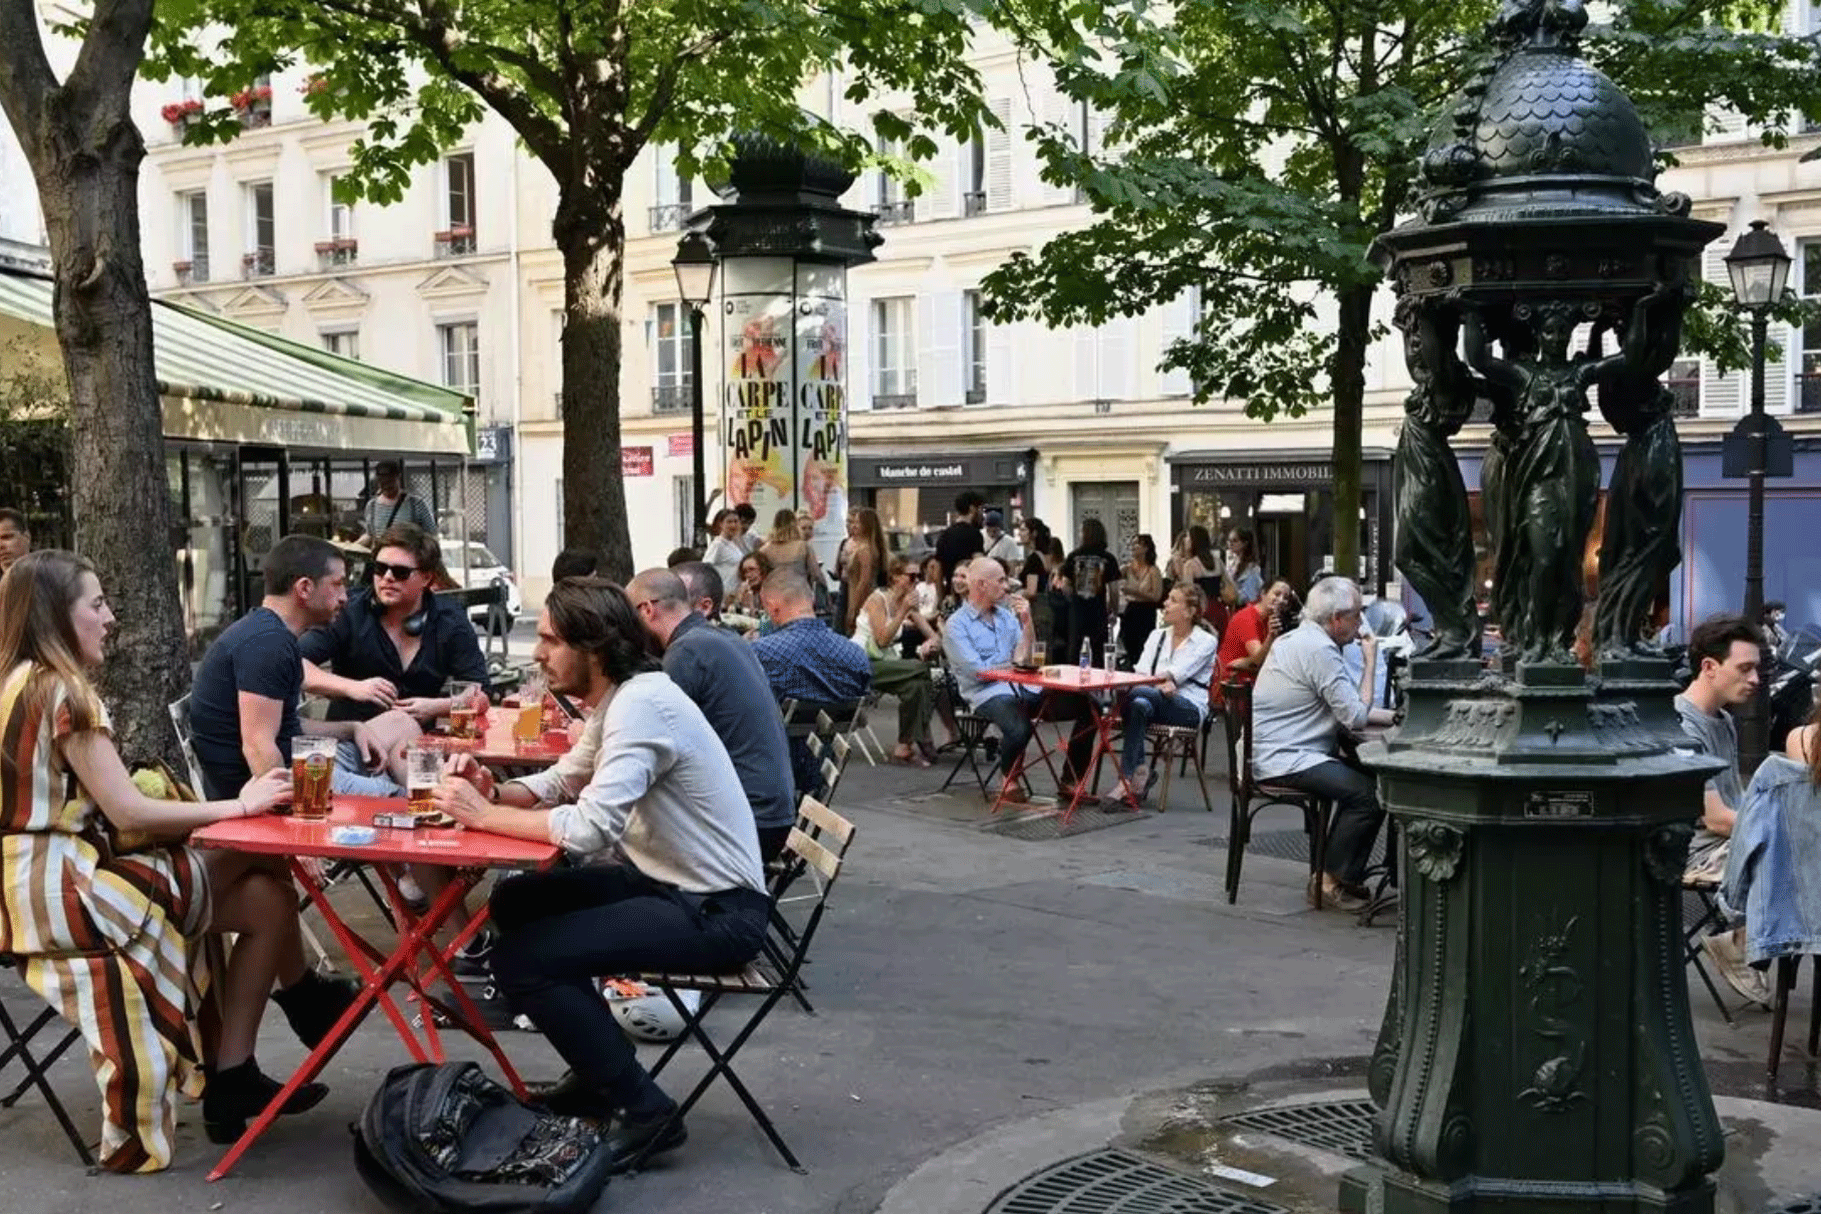 يعوض حضور رواد المطاعم من الفرنسيين غياب الزائر الأجنبي خلال هذا الصيف